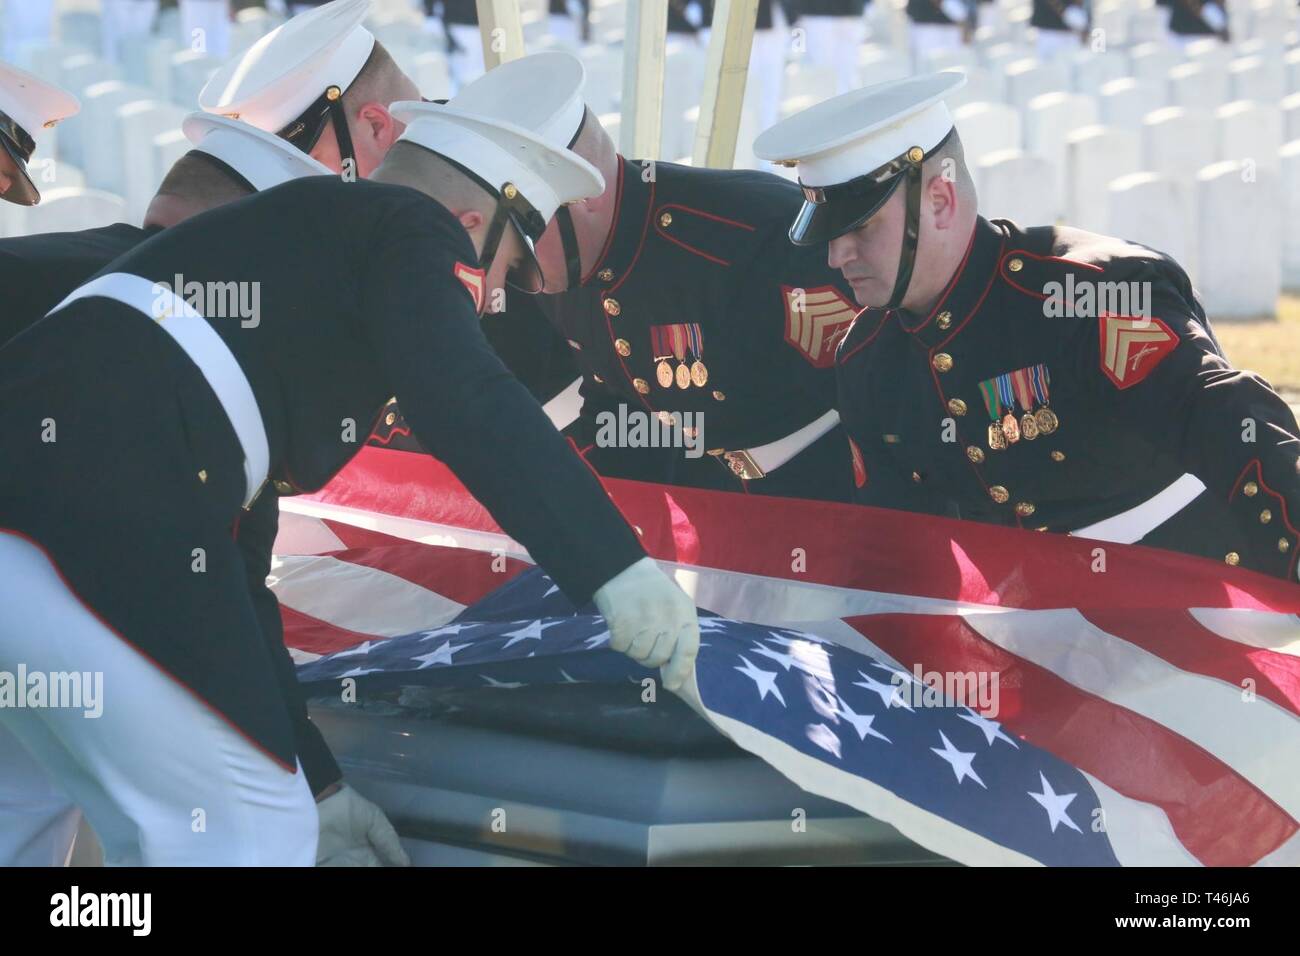 Marine Corps corpo portatori, Bravo Company, caserma marini di Washington D.C., preparare per piegare la bandiera nazionale durante un intero onora le esequie di Lt. Gen. Leo Dulacki presso il Cimitero Nazionale di Arlington, Arlington, Virginia, Marzo 13, 2019. Dulacki arruolato nel corpo della Marina nel 1941 e ha ricevuto la sua commissione come sottotenente il 7 settembre 2, 1941. Durante i suoi 32 anni di servizio, Dulacki combattuto durante la II Guerra Mondiale, Corea e Vietnam; si ritirò nel gennaio 1974. La sua personale decorazioni incluso il servizio distinto medaglia con una stella d'oro, legione di merito con una lotta contro la distinzione di dispositivo per la val Foto Stock